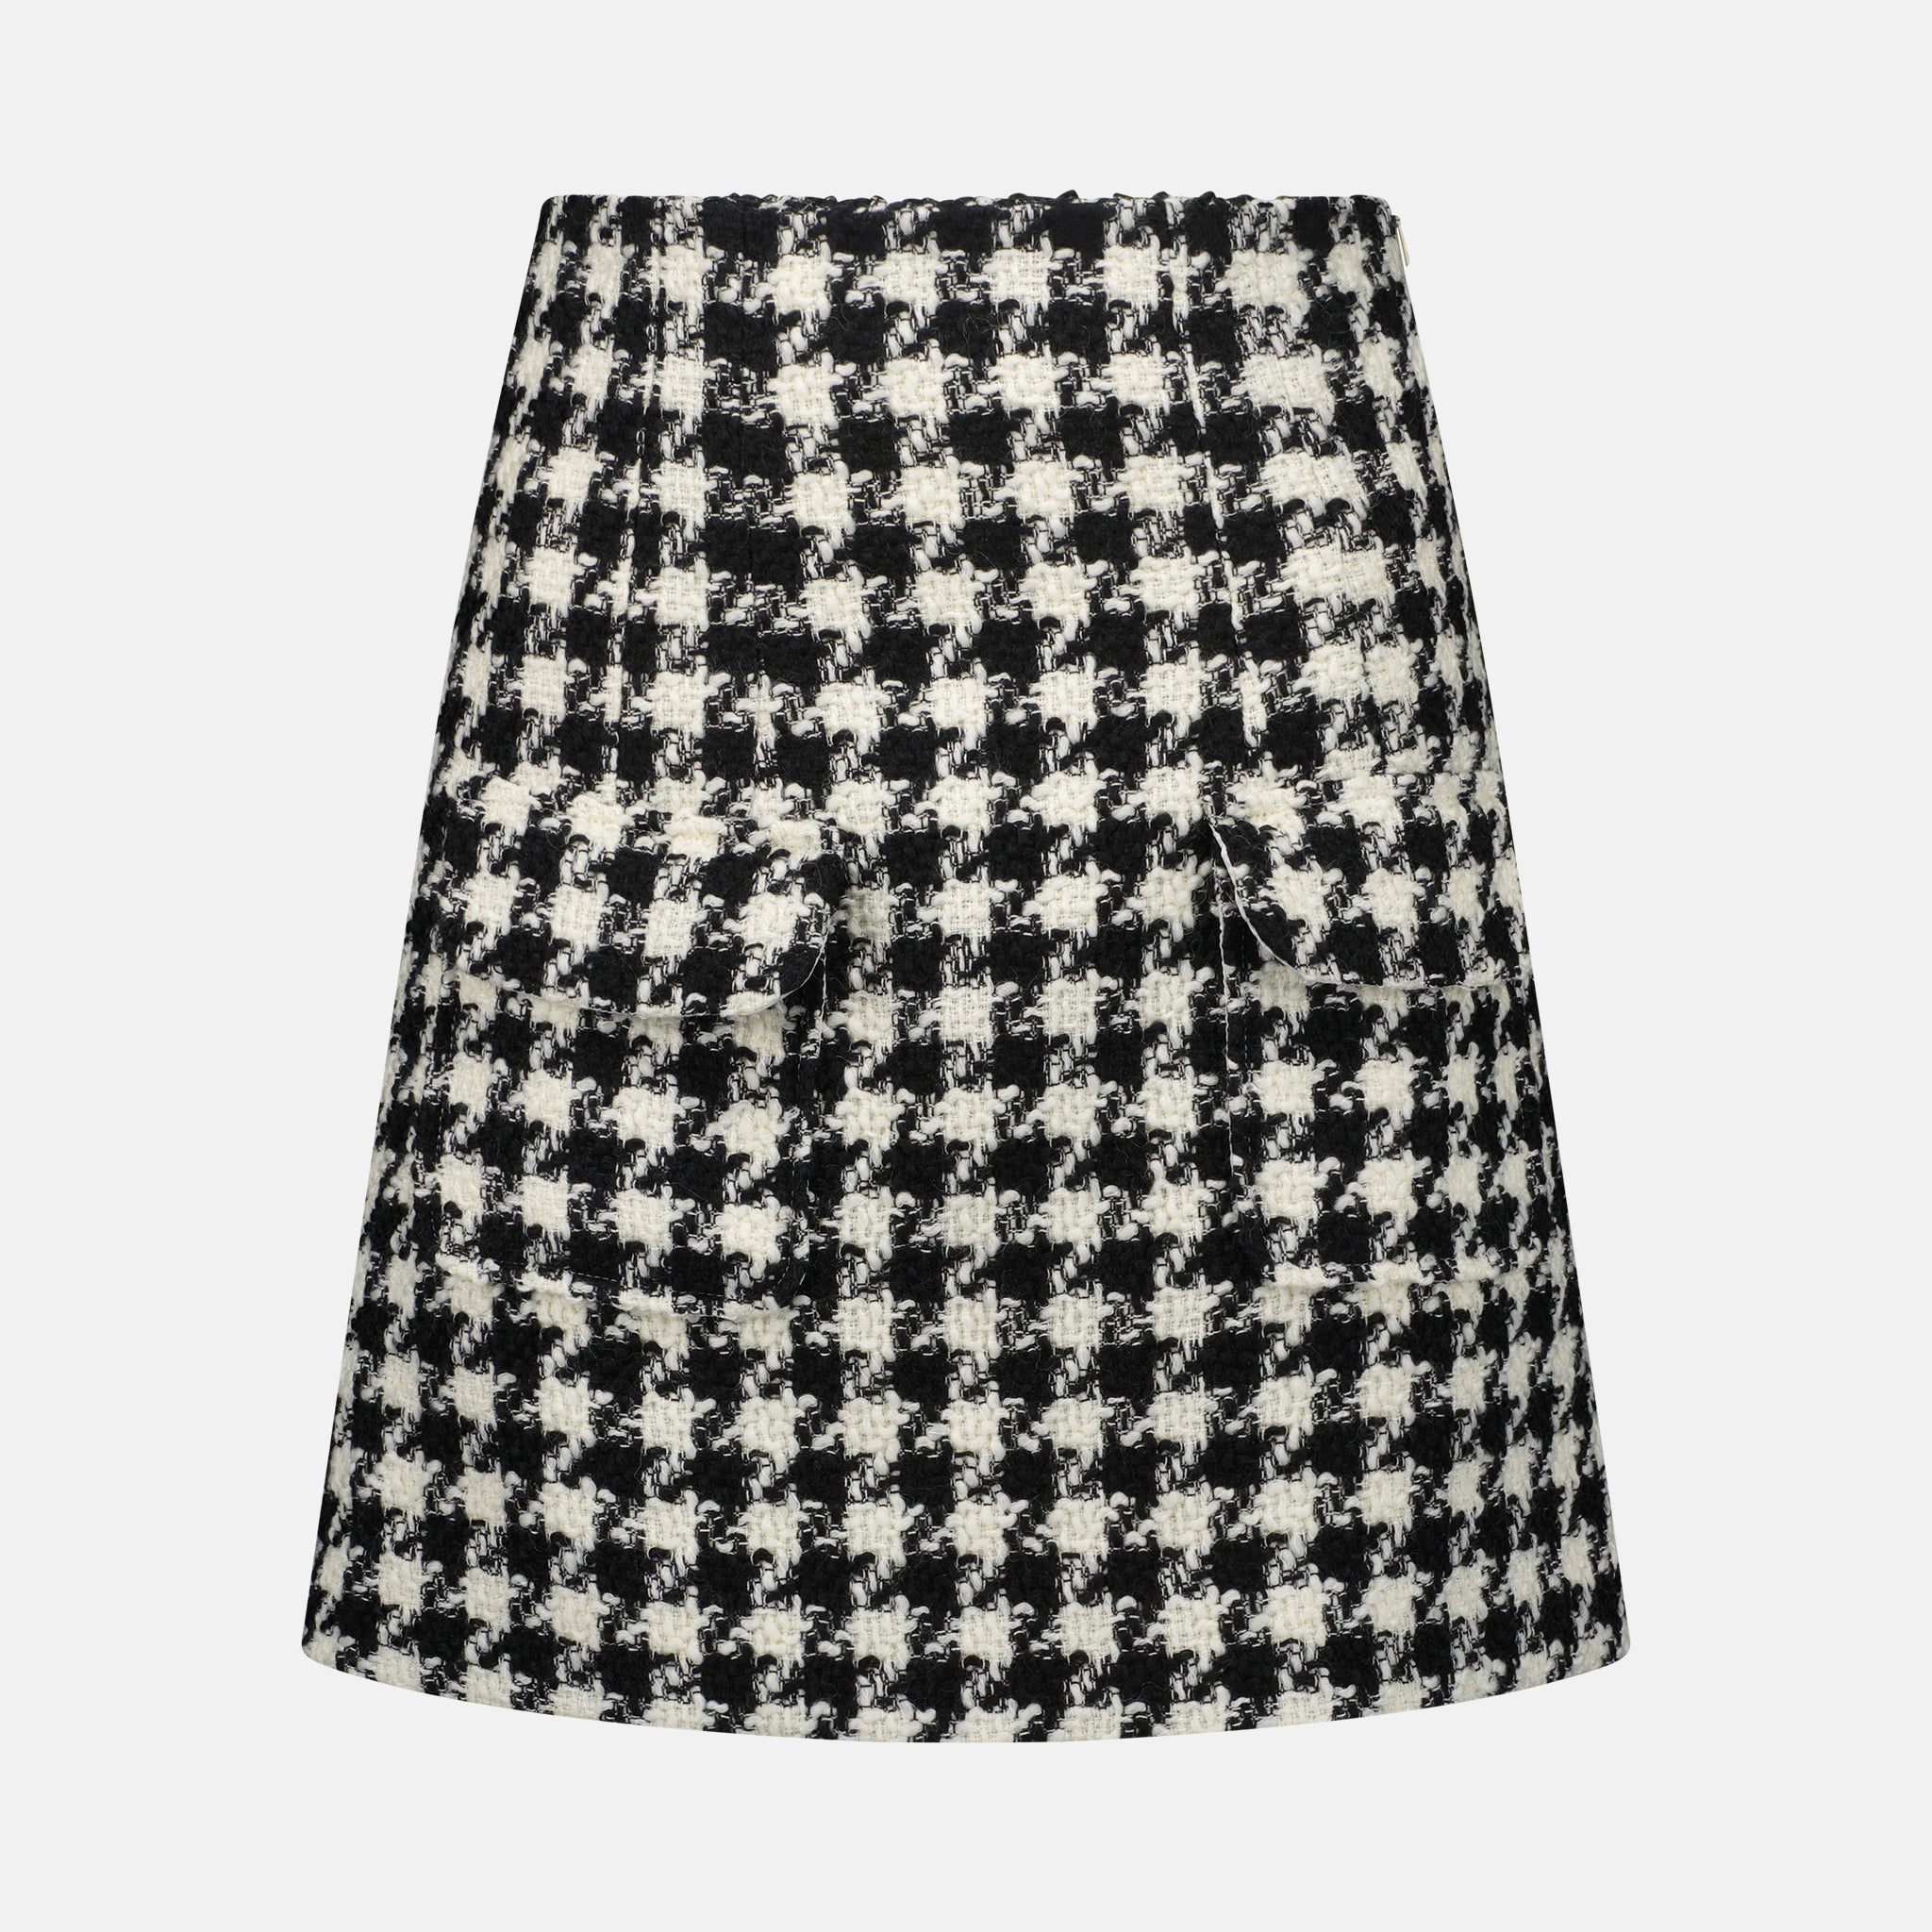 Sable Skirt